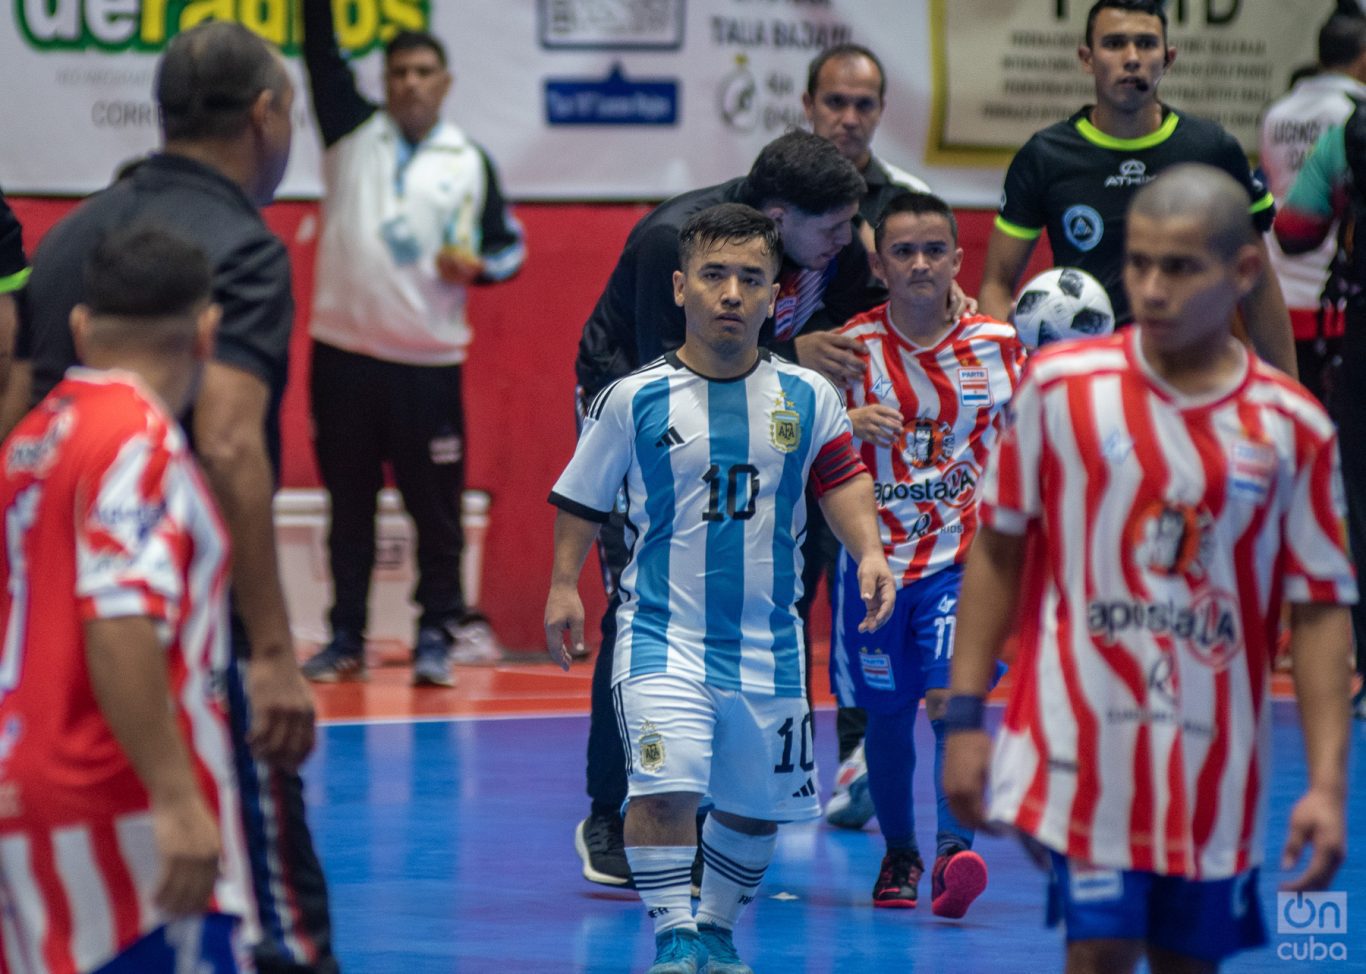 Facundo Rojas, el capitán de la selección argentina. Foto: Kaloian.